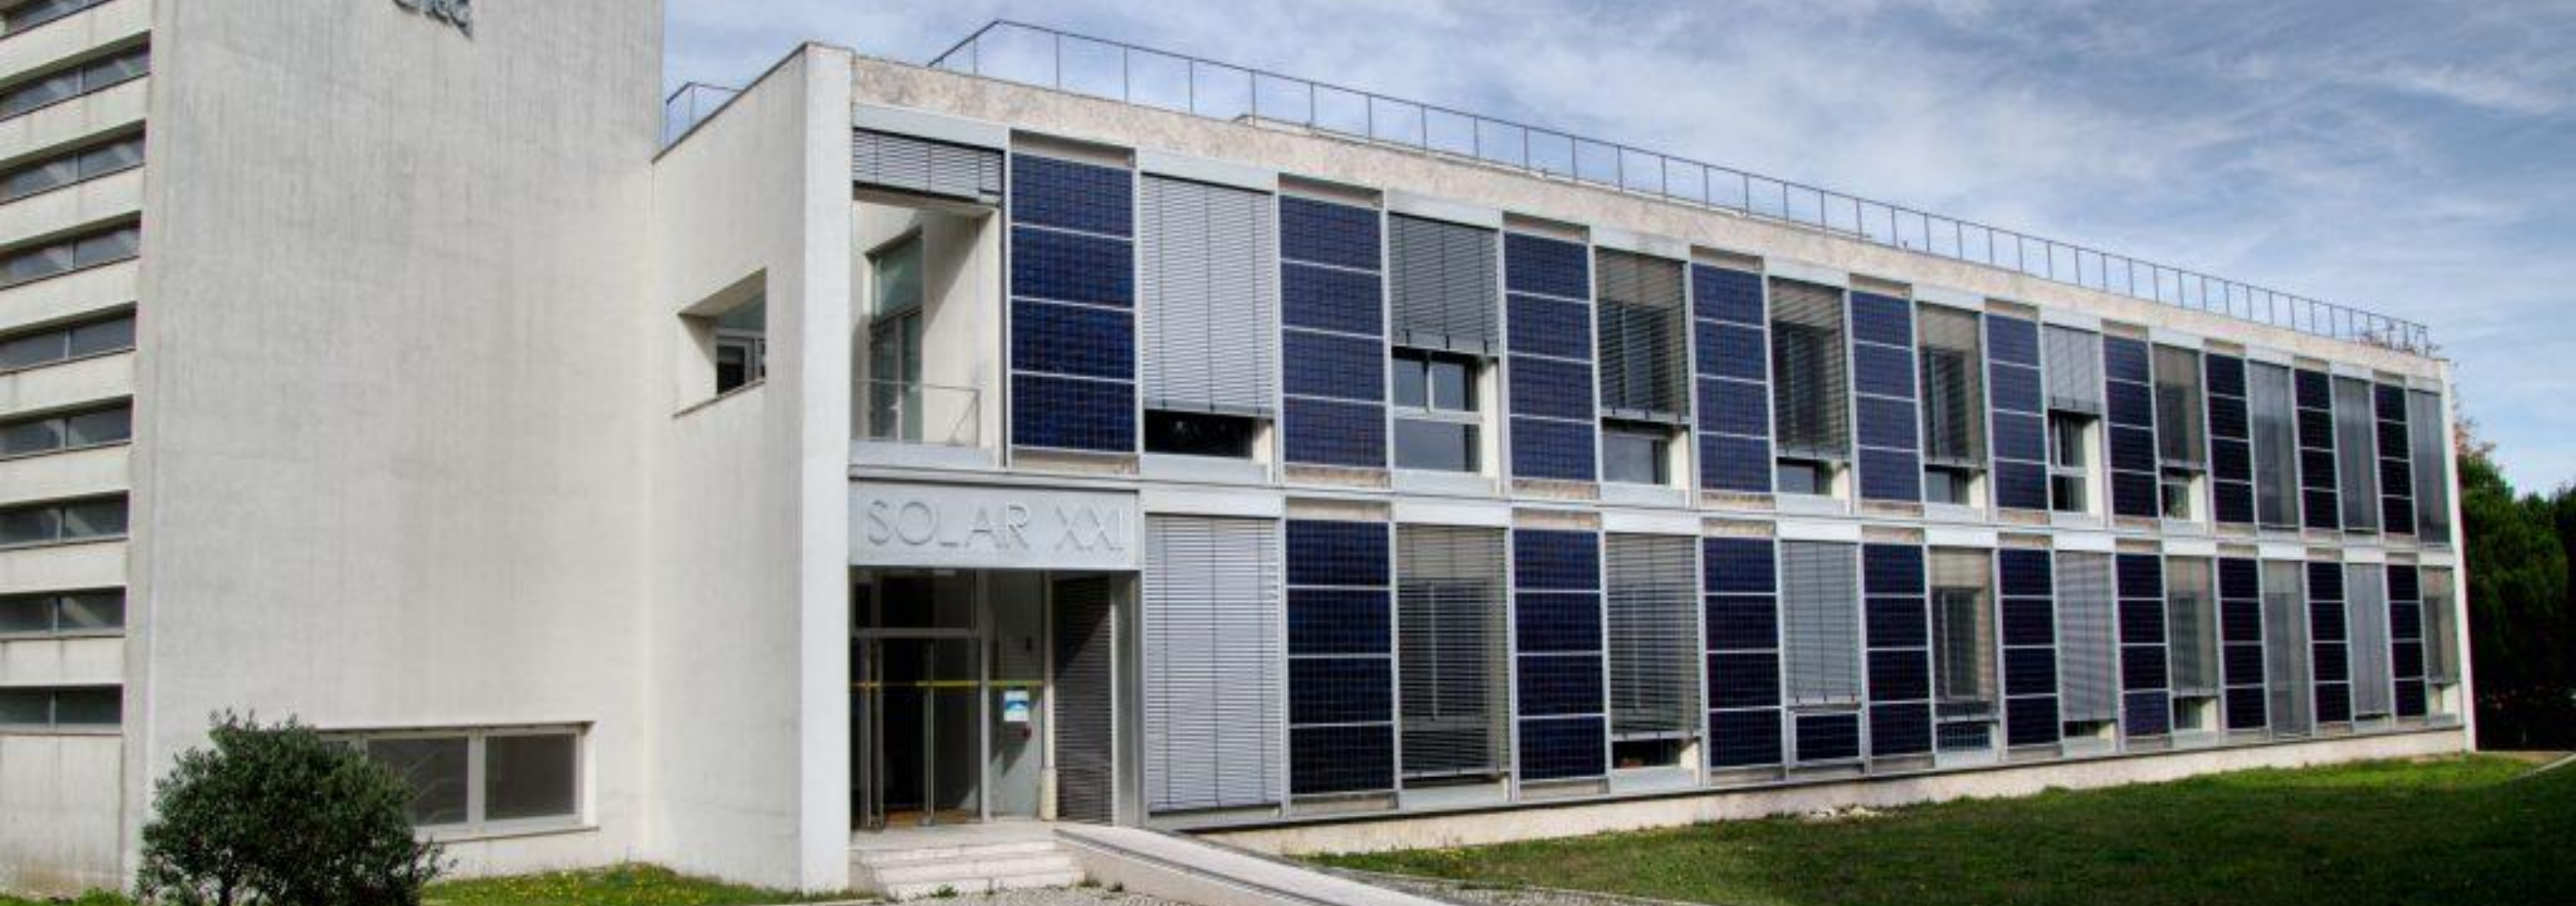 fotovoltaica-viviendas-comunitarias-sersolar